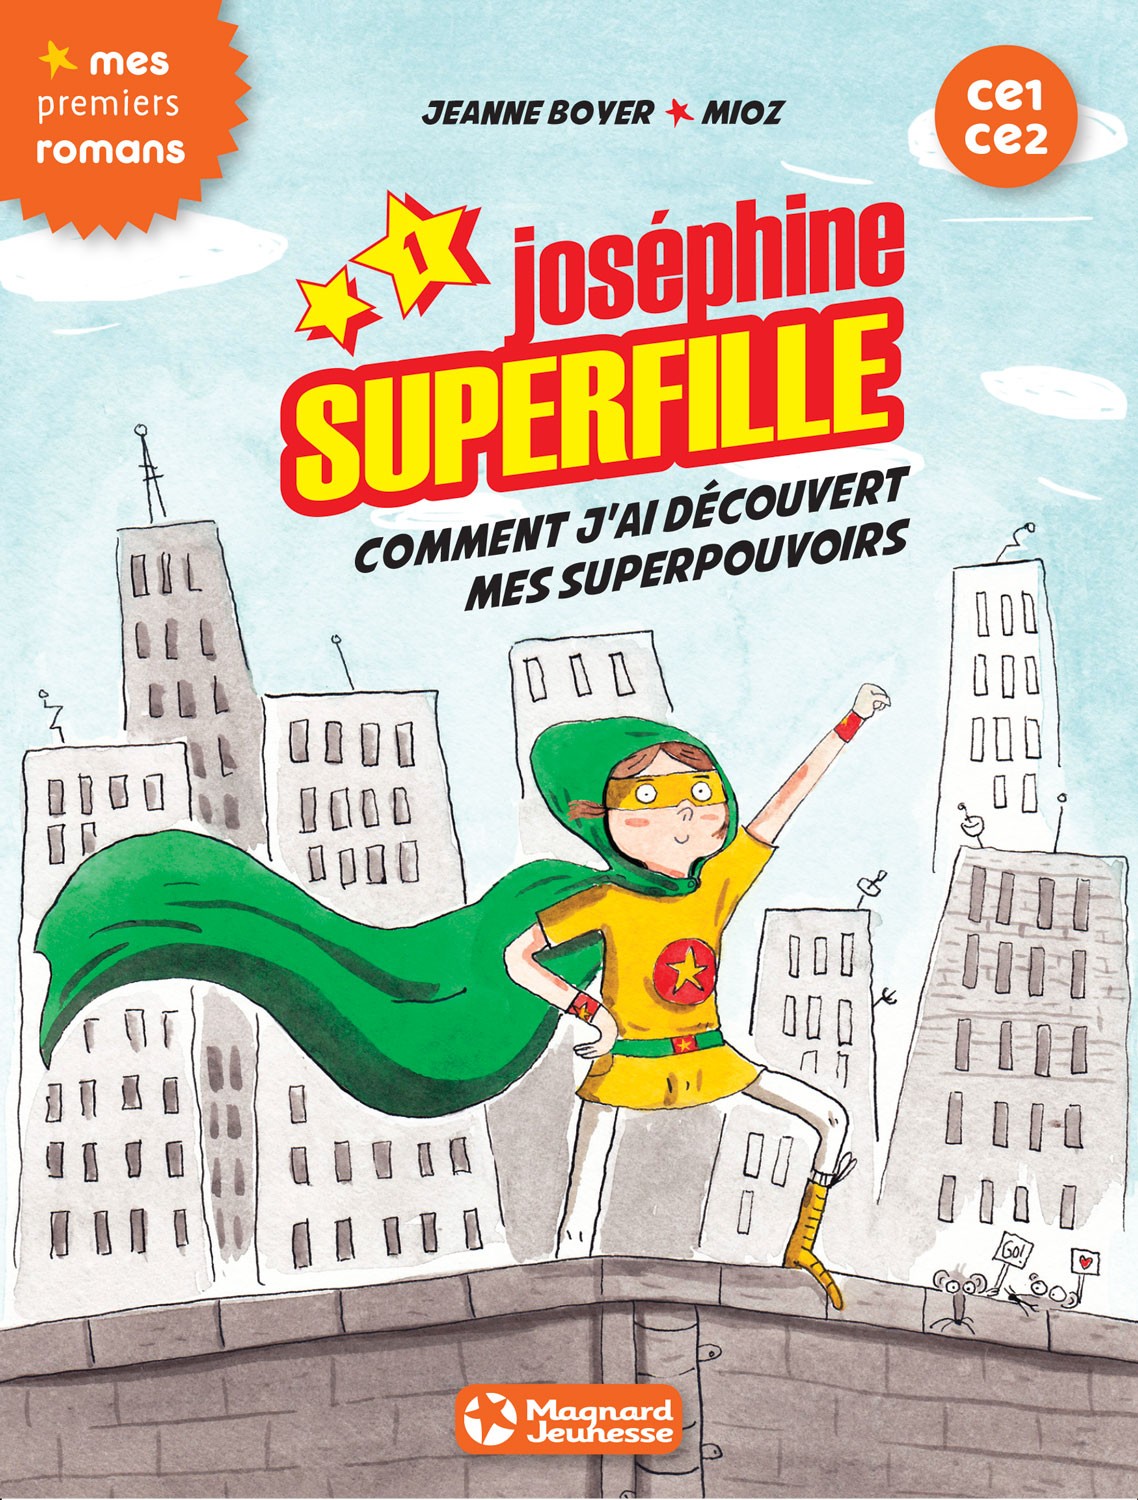 JOSEPHINE SUPERFILLE 1 CE1 CE2 Comment j'ai découvert mes superpouvoirs